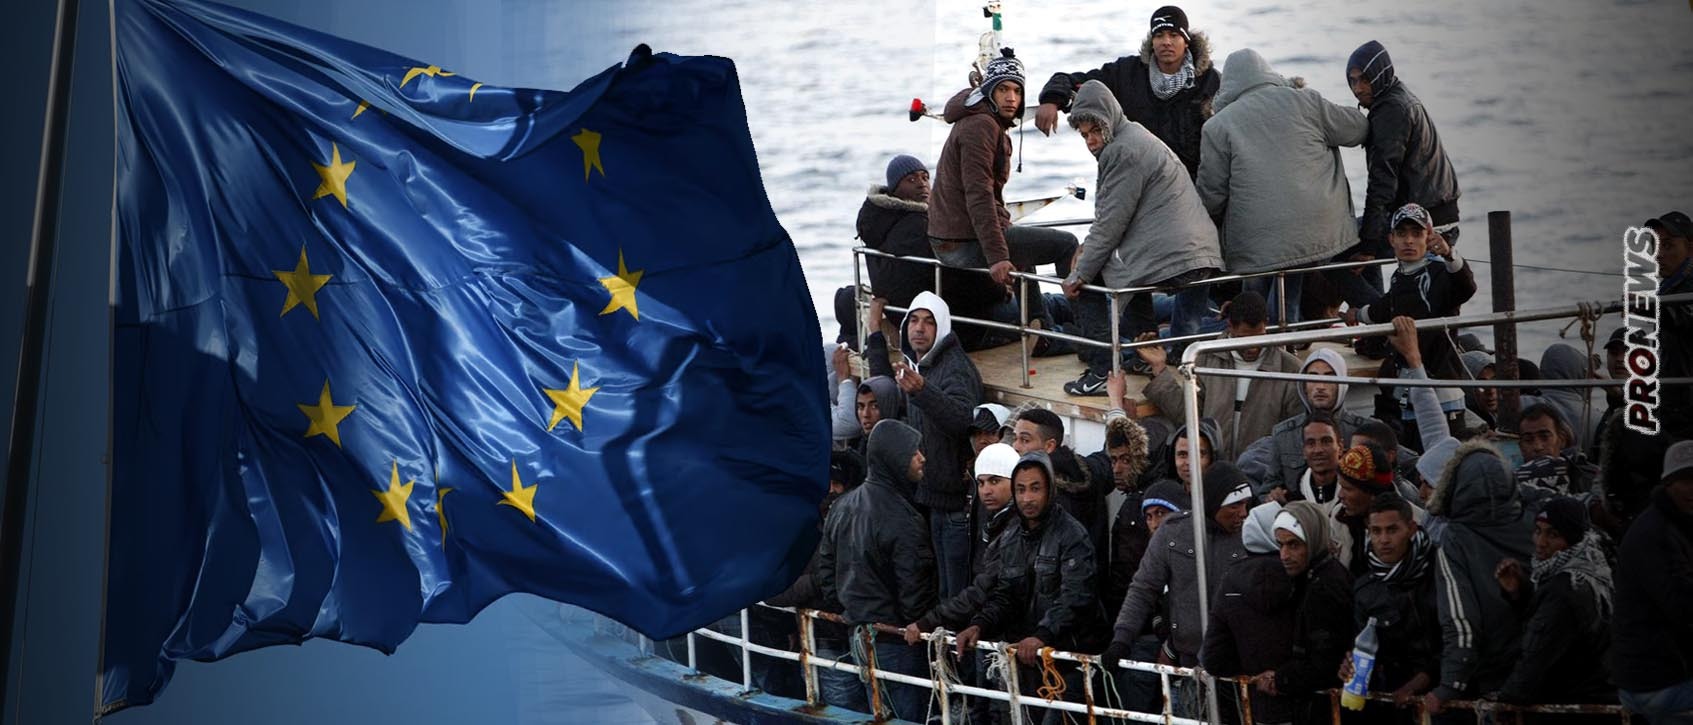 Η ΕΕ κατέληξε σε συμφωνία για το μεταναστευτικό: «Τα κράτη-μέλη στα εξωτερικά μας σύνορα θα διαχειριστούν τους παράνομους αλλοδαπούς»